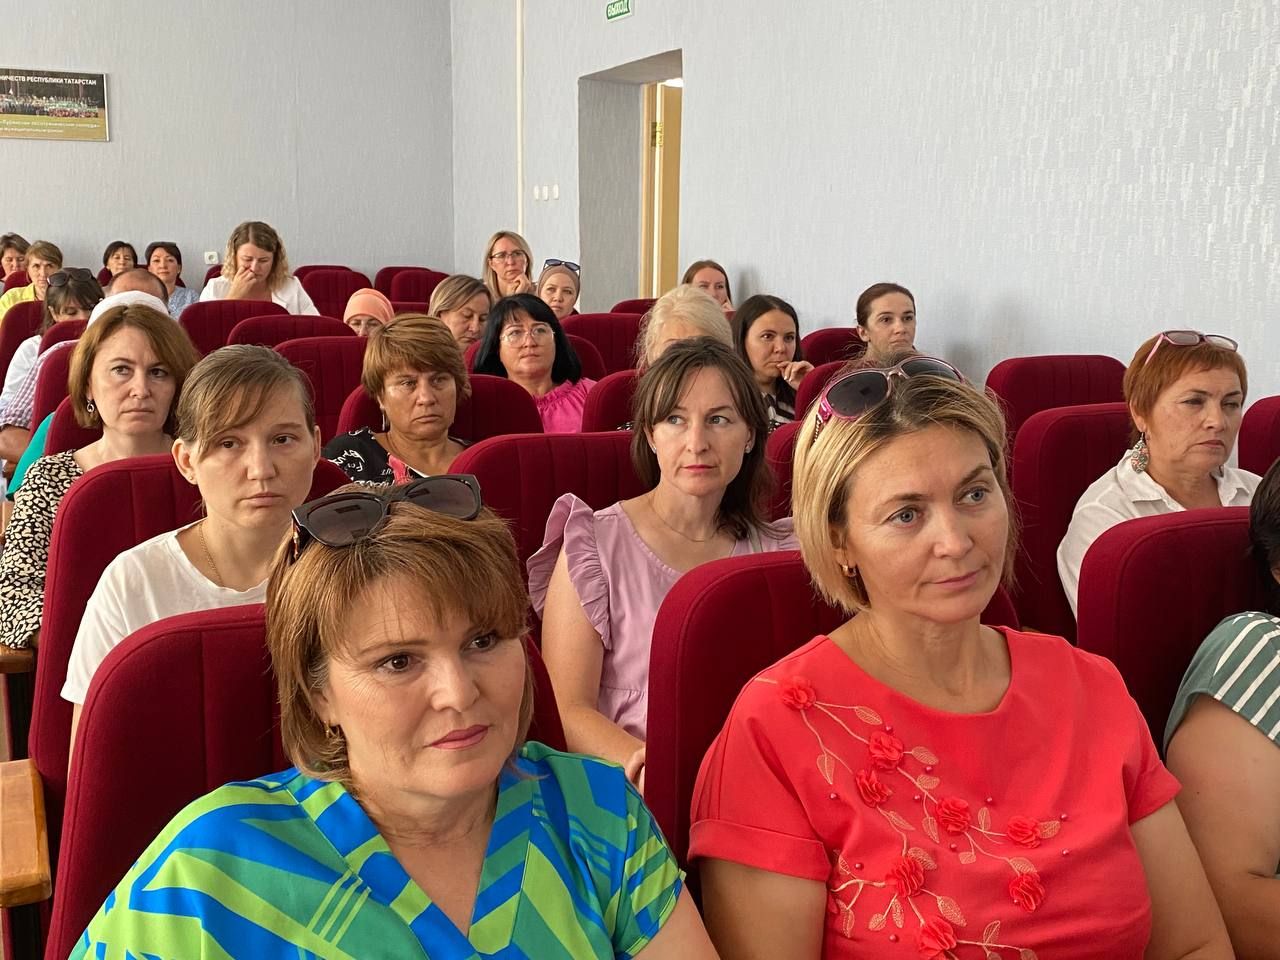 В Кукморе состоялось совещание Федерации профсоюзов РТ